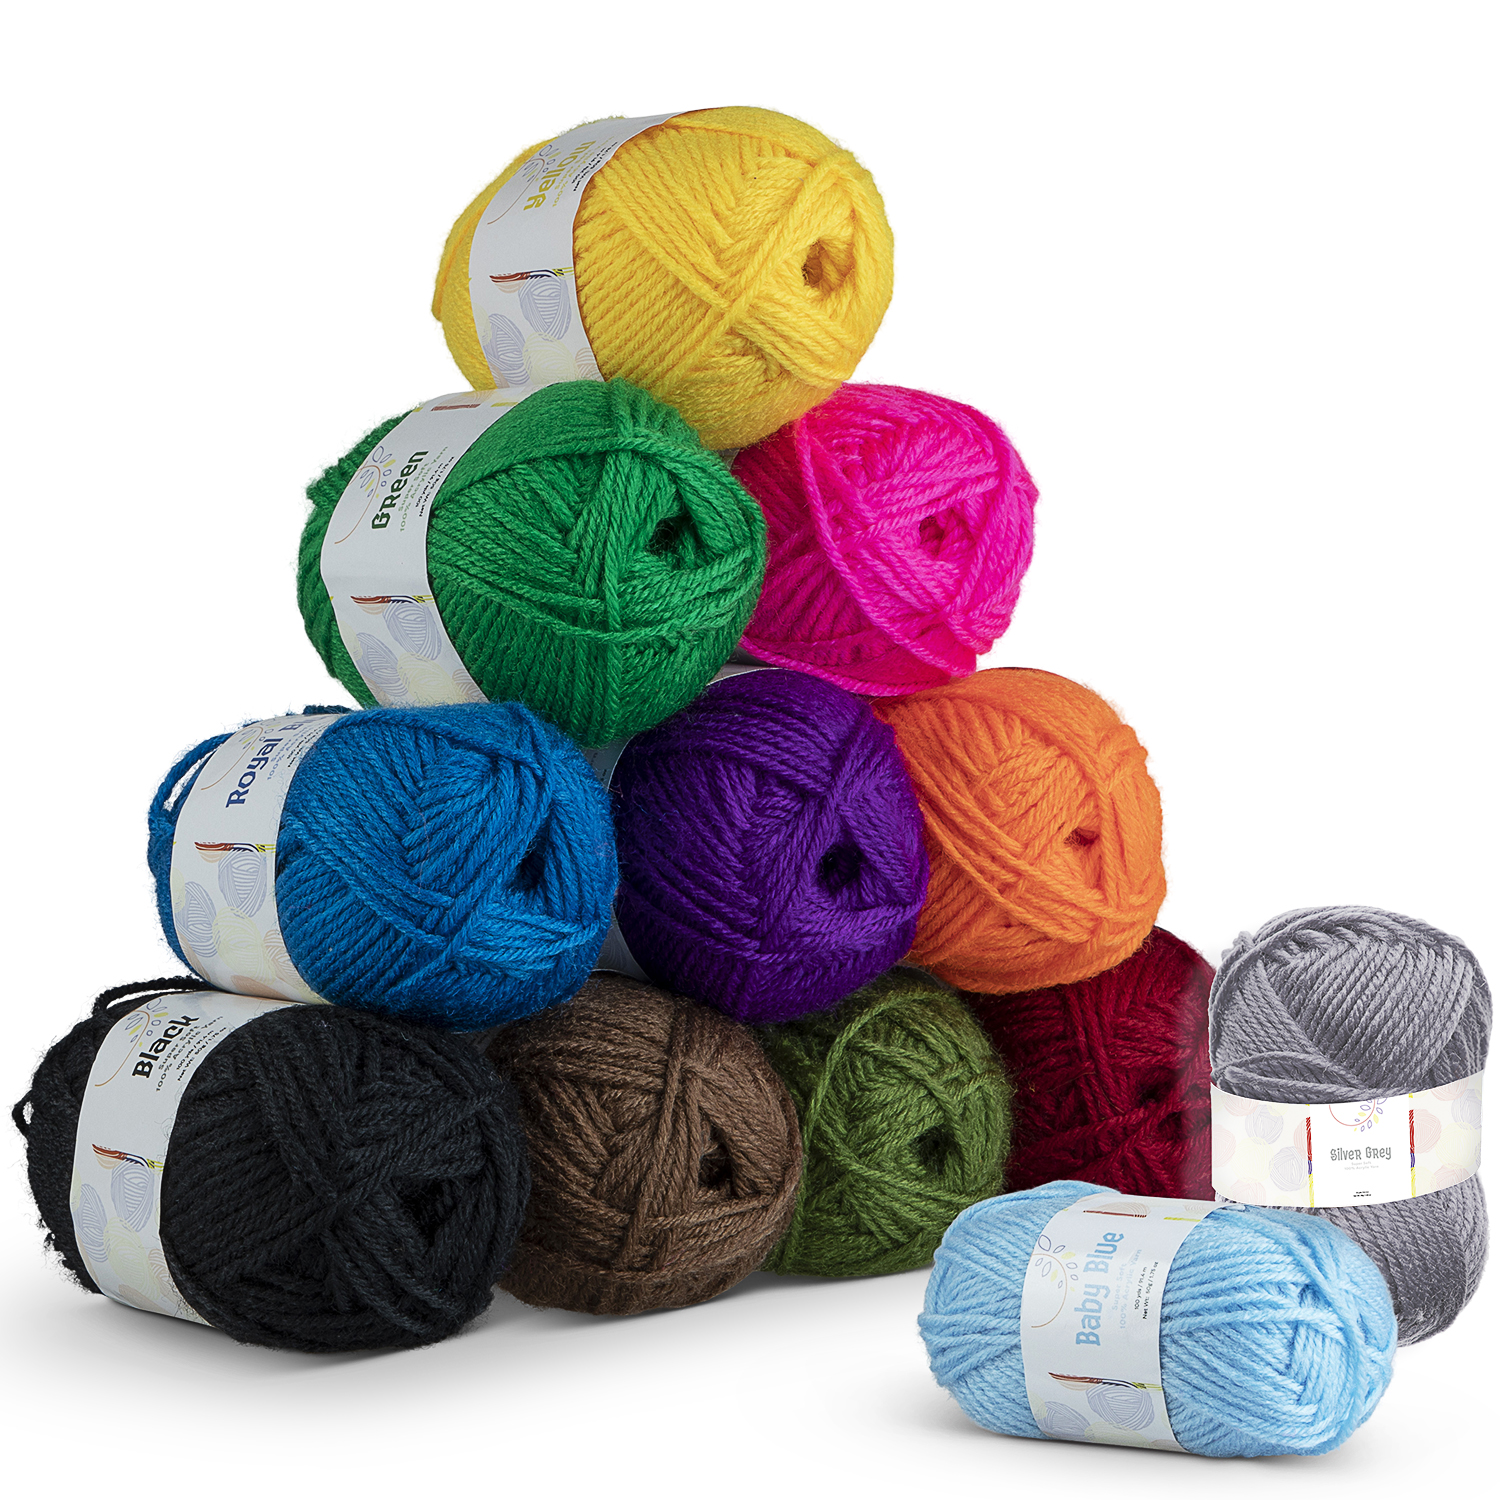 Craftbud (12pc) Crochet Yarn, Multi-Colored Acrylic Hand Knitting Yarn for Crochet, 1200 Yards, Size: 12 Pack Yarn